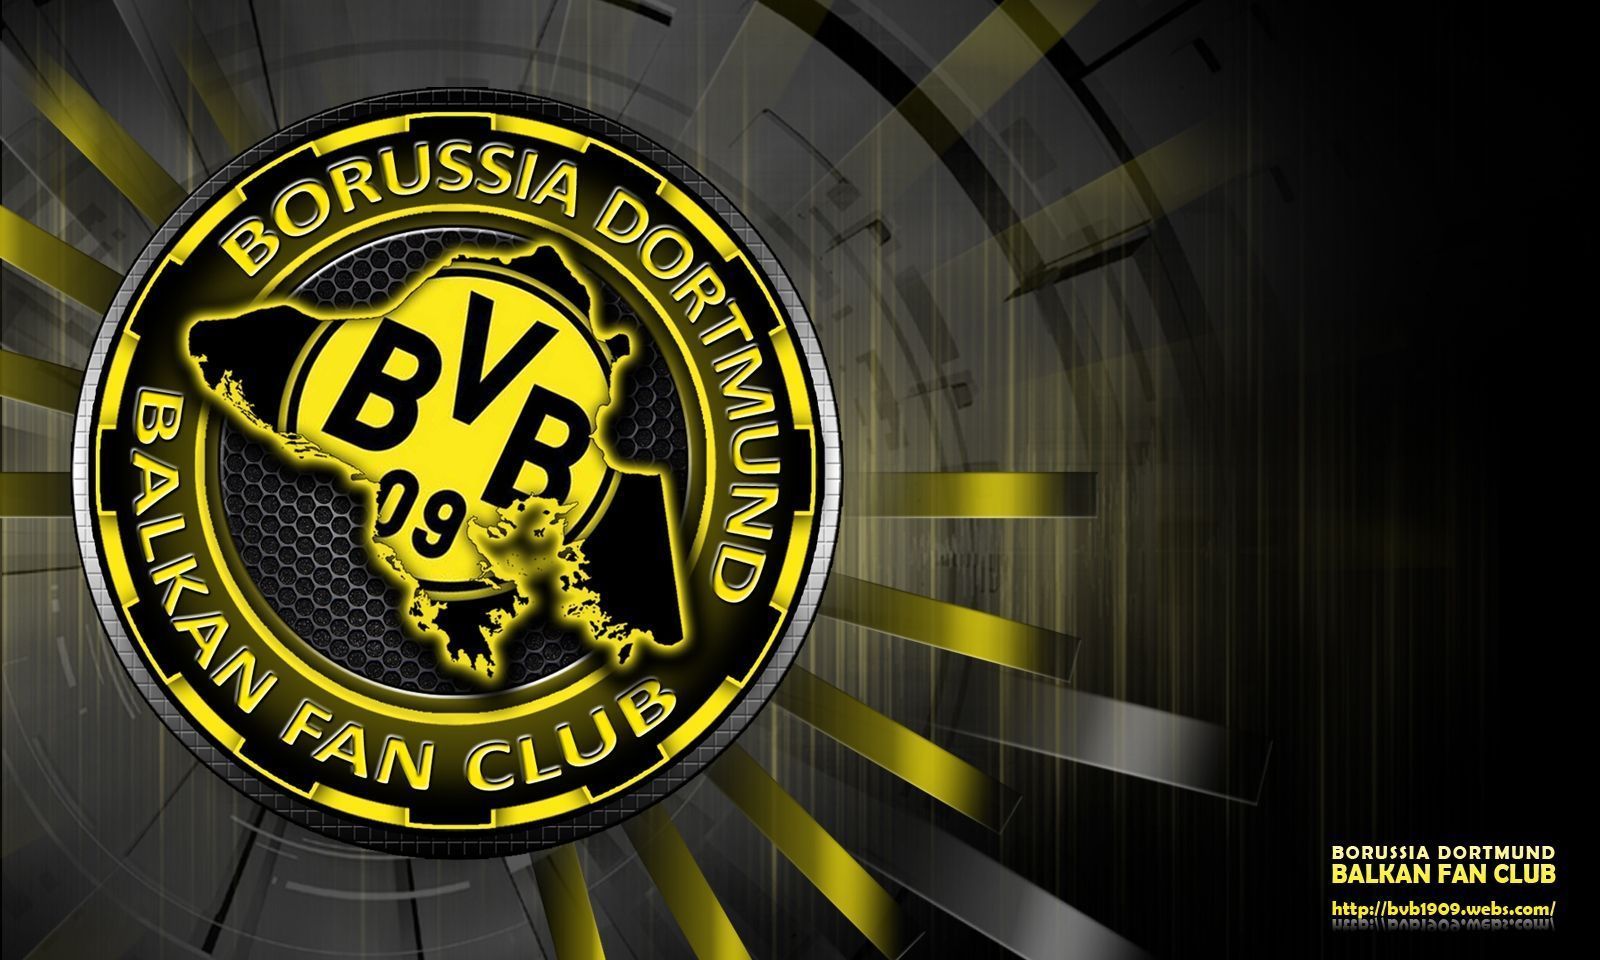  BVB HD Hintergrundbild 1600x960. BVB Wallpaper Handy Logos.de. Bvb Dortmund, Borussia Dortmund Wallpaper, Bvb